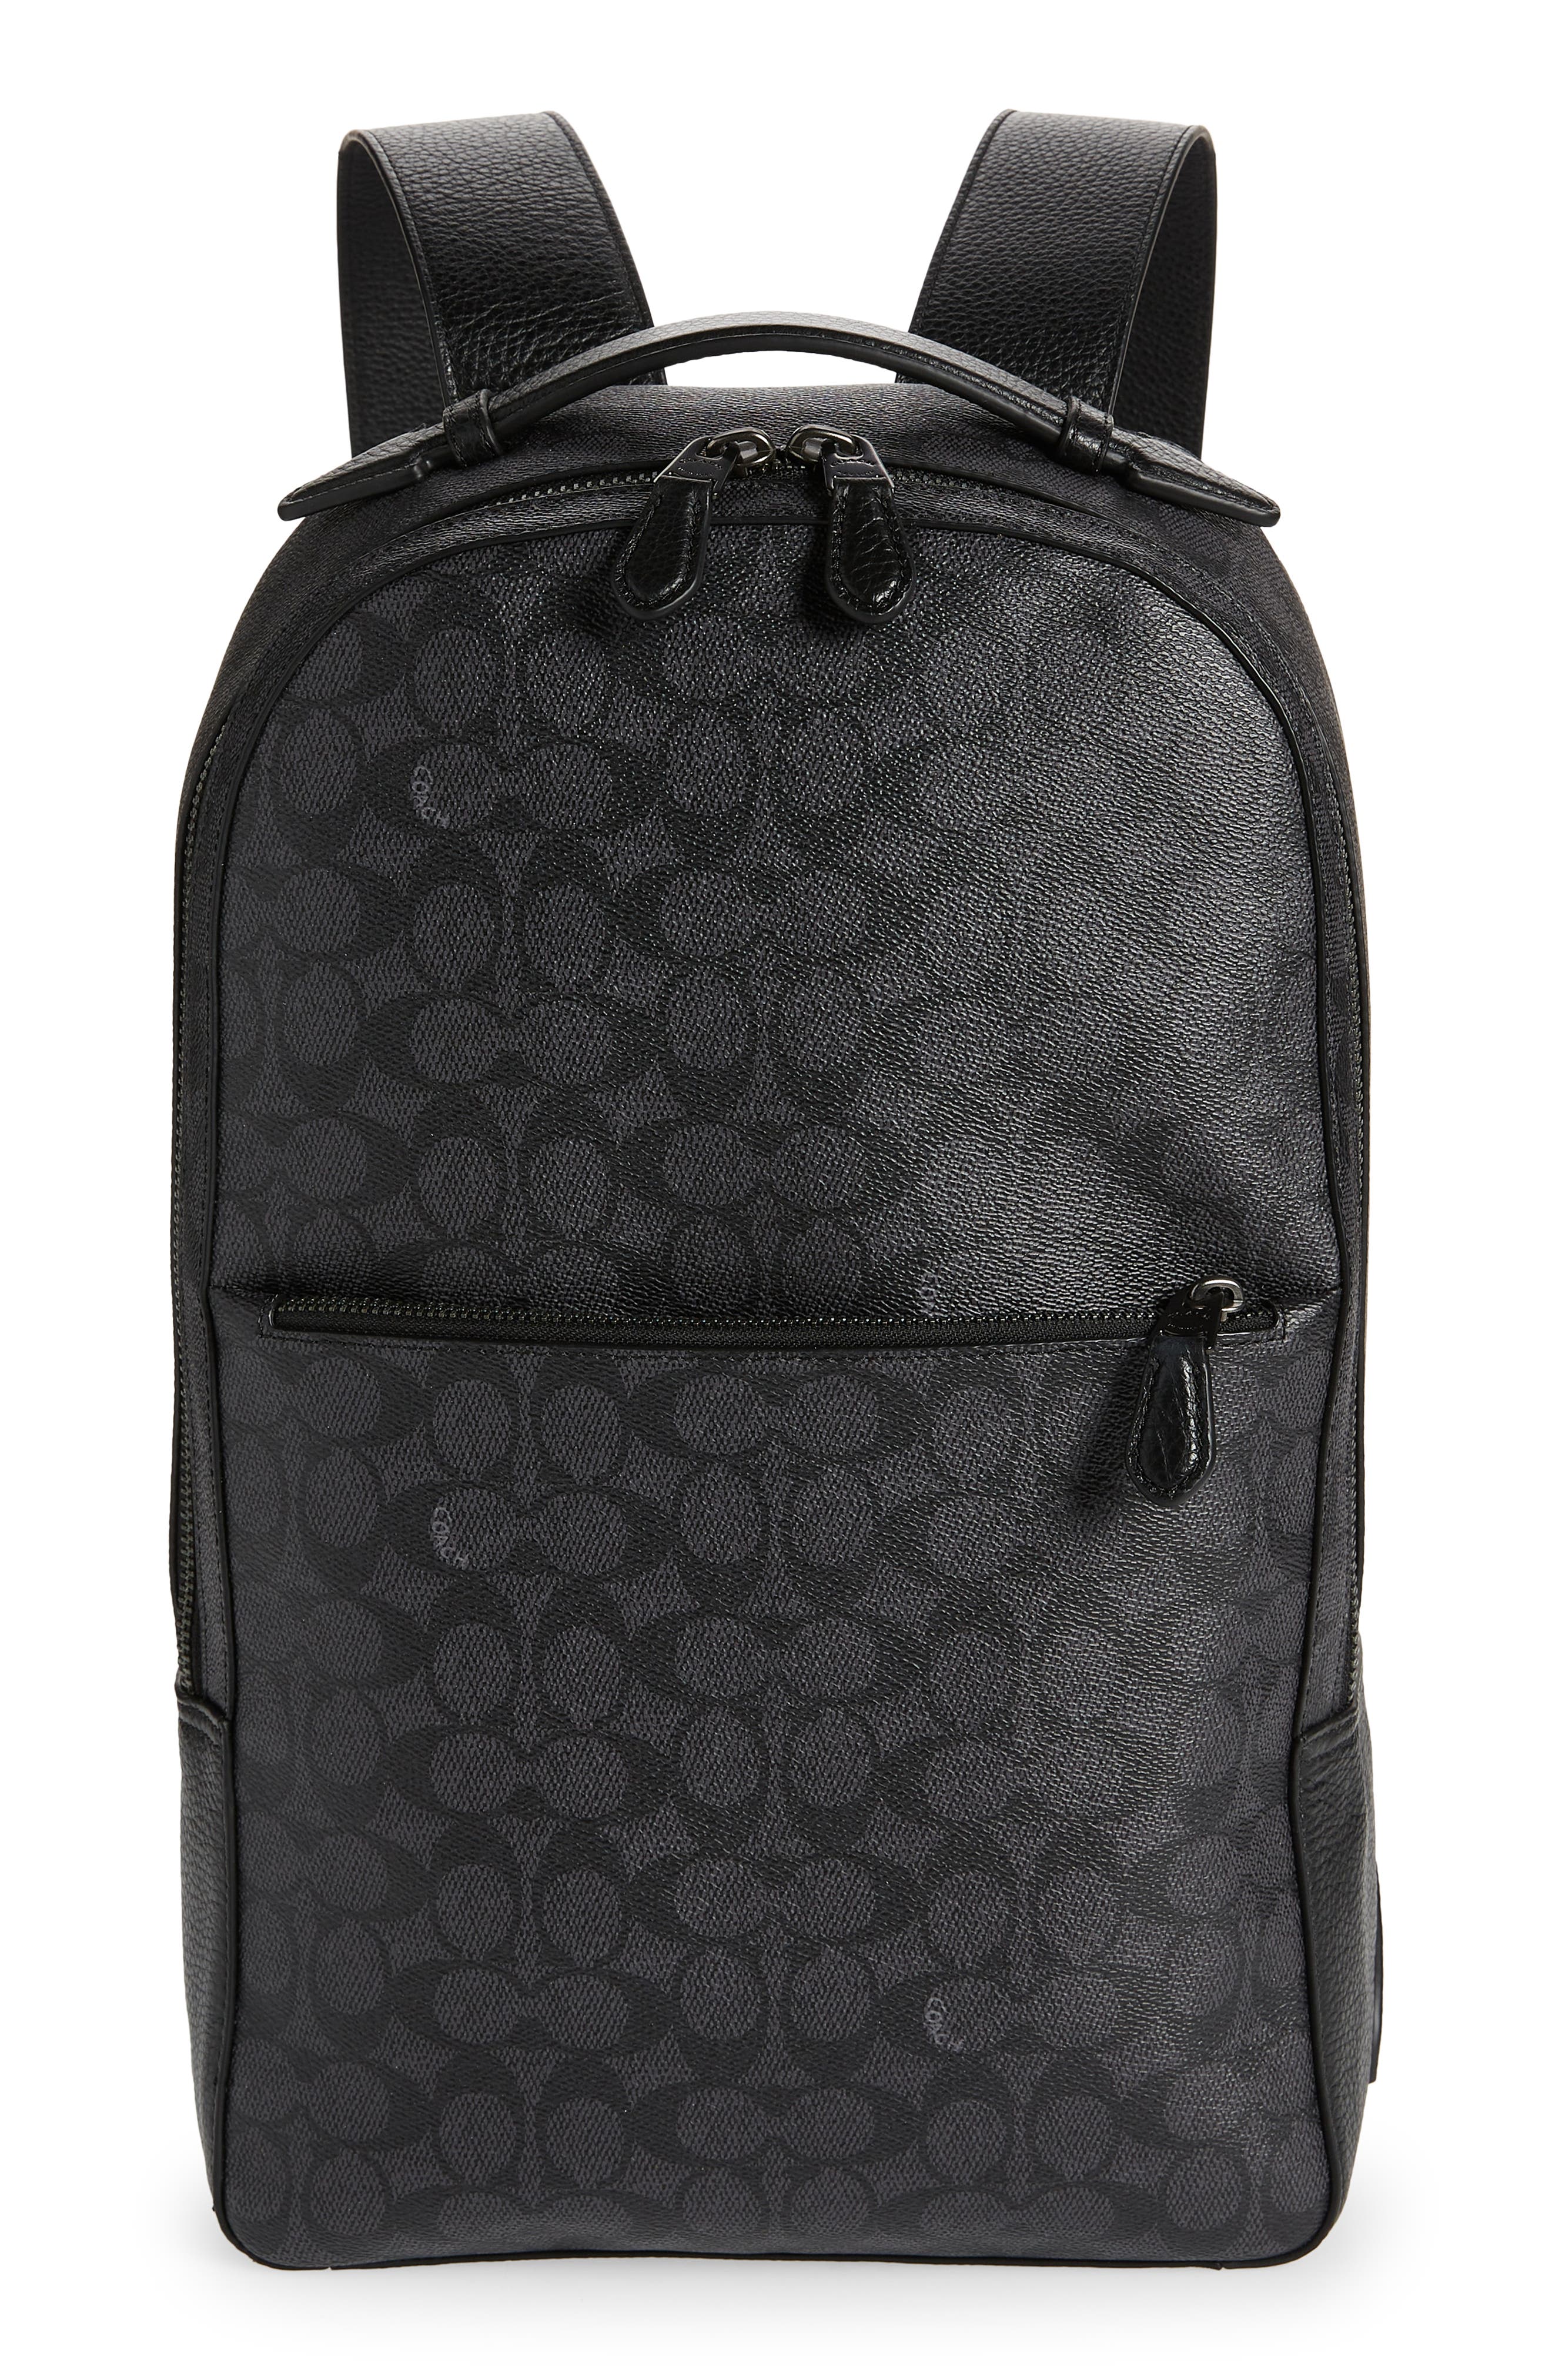 Men's Black Large Faux Leather BackPack Rucksack Bag 